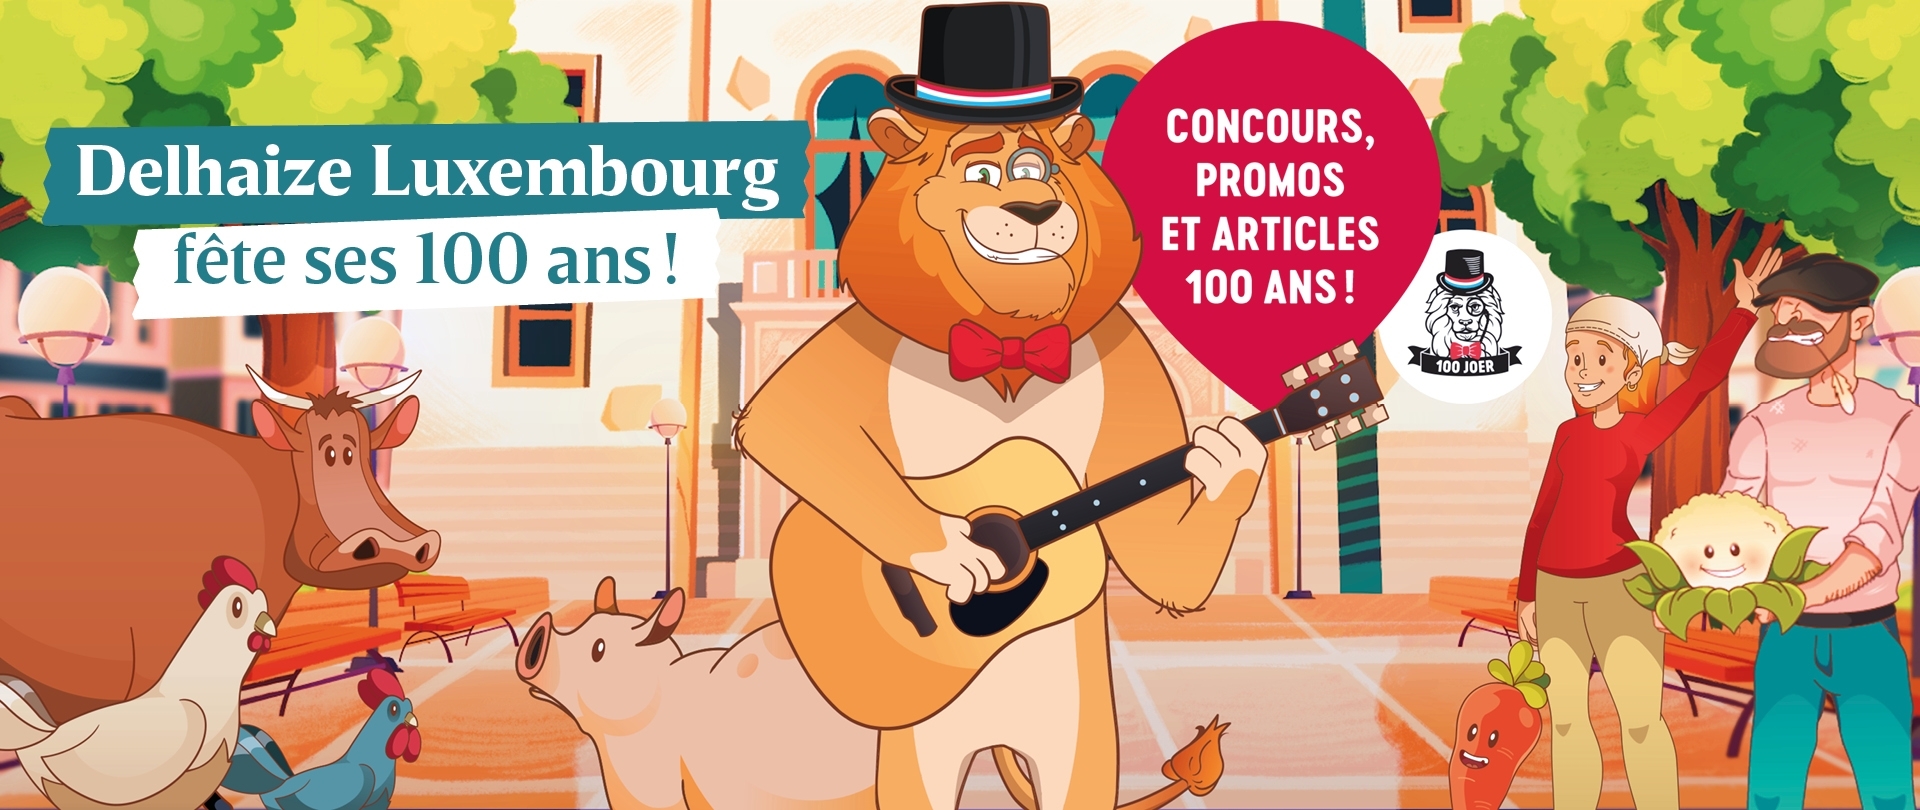 Delhaize Luxembourg fête ses 100 ans !